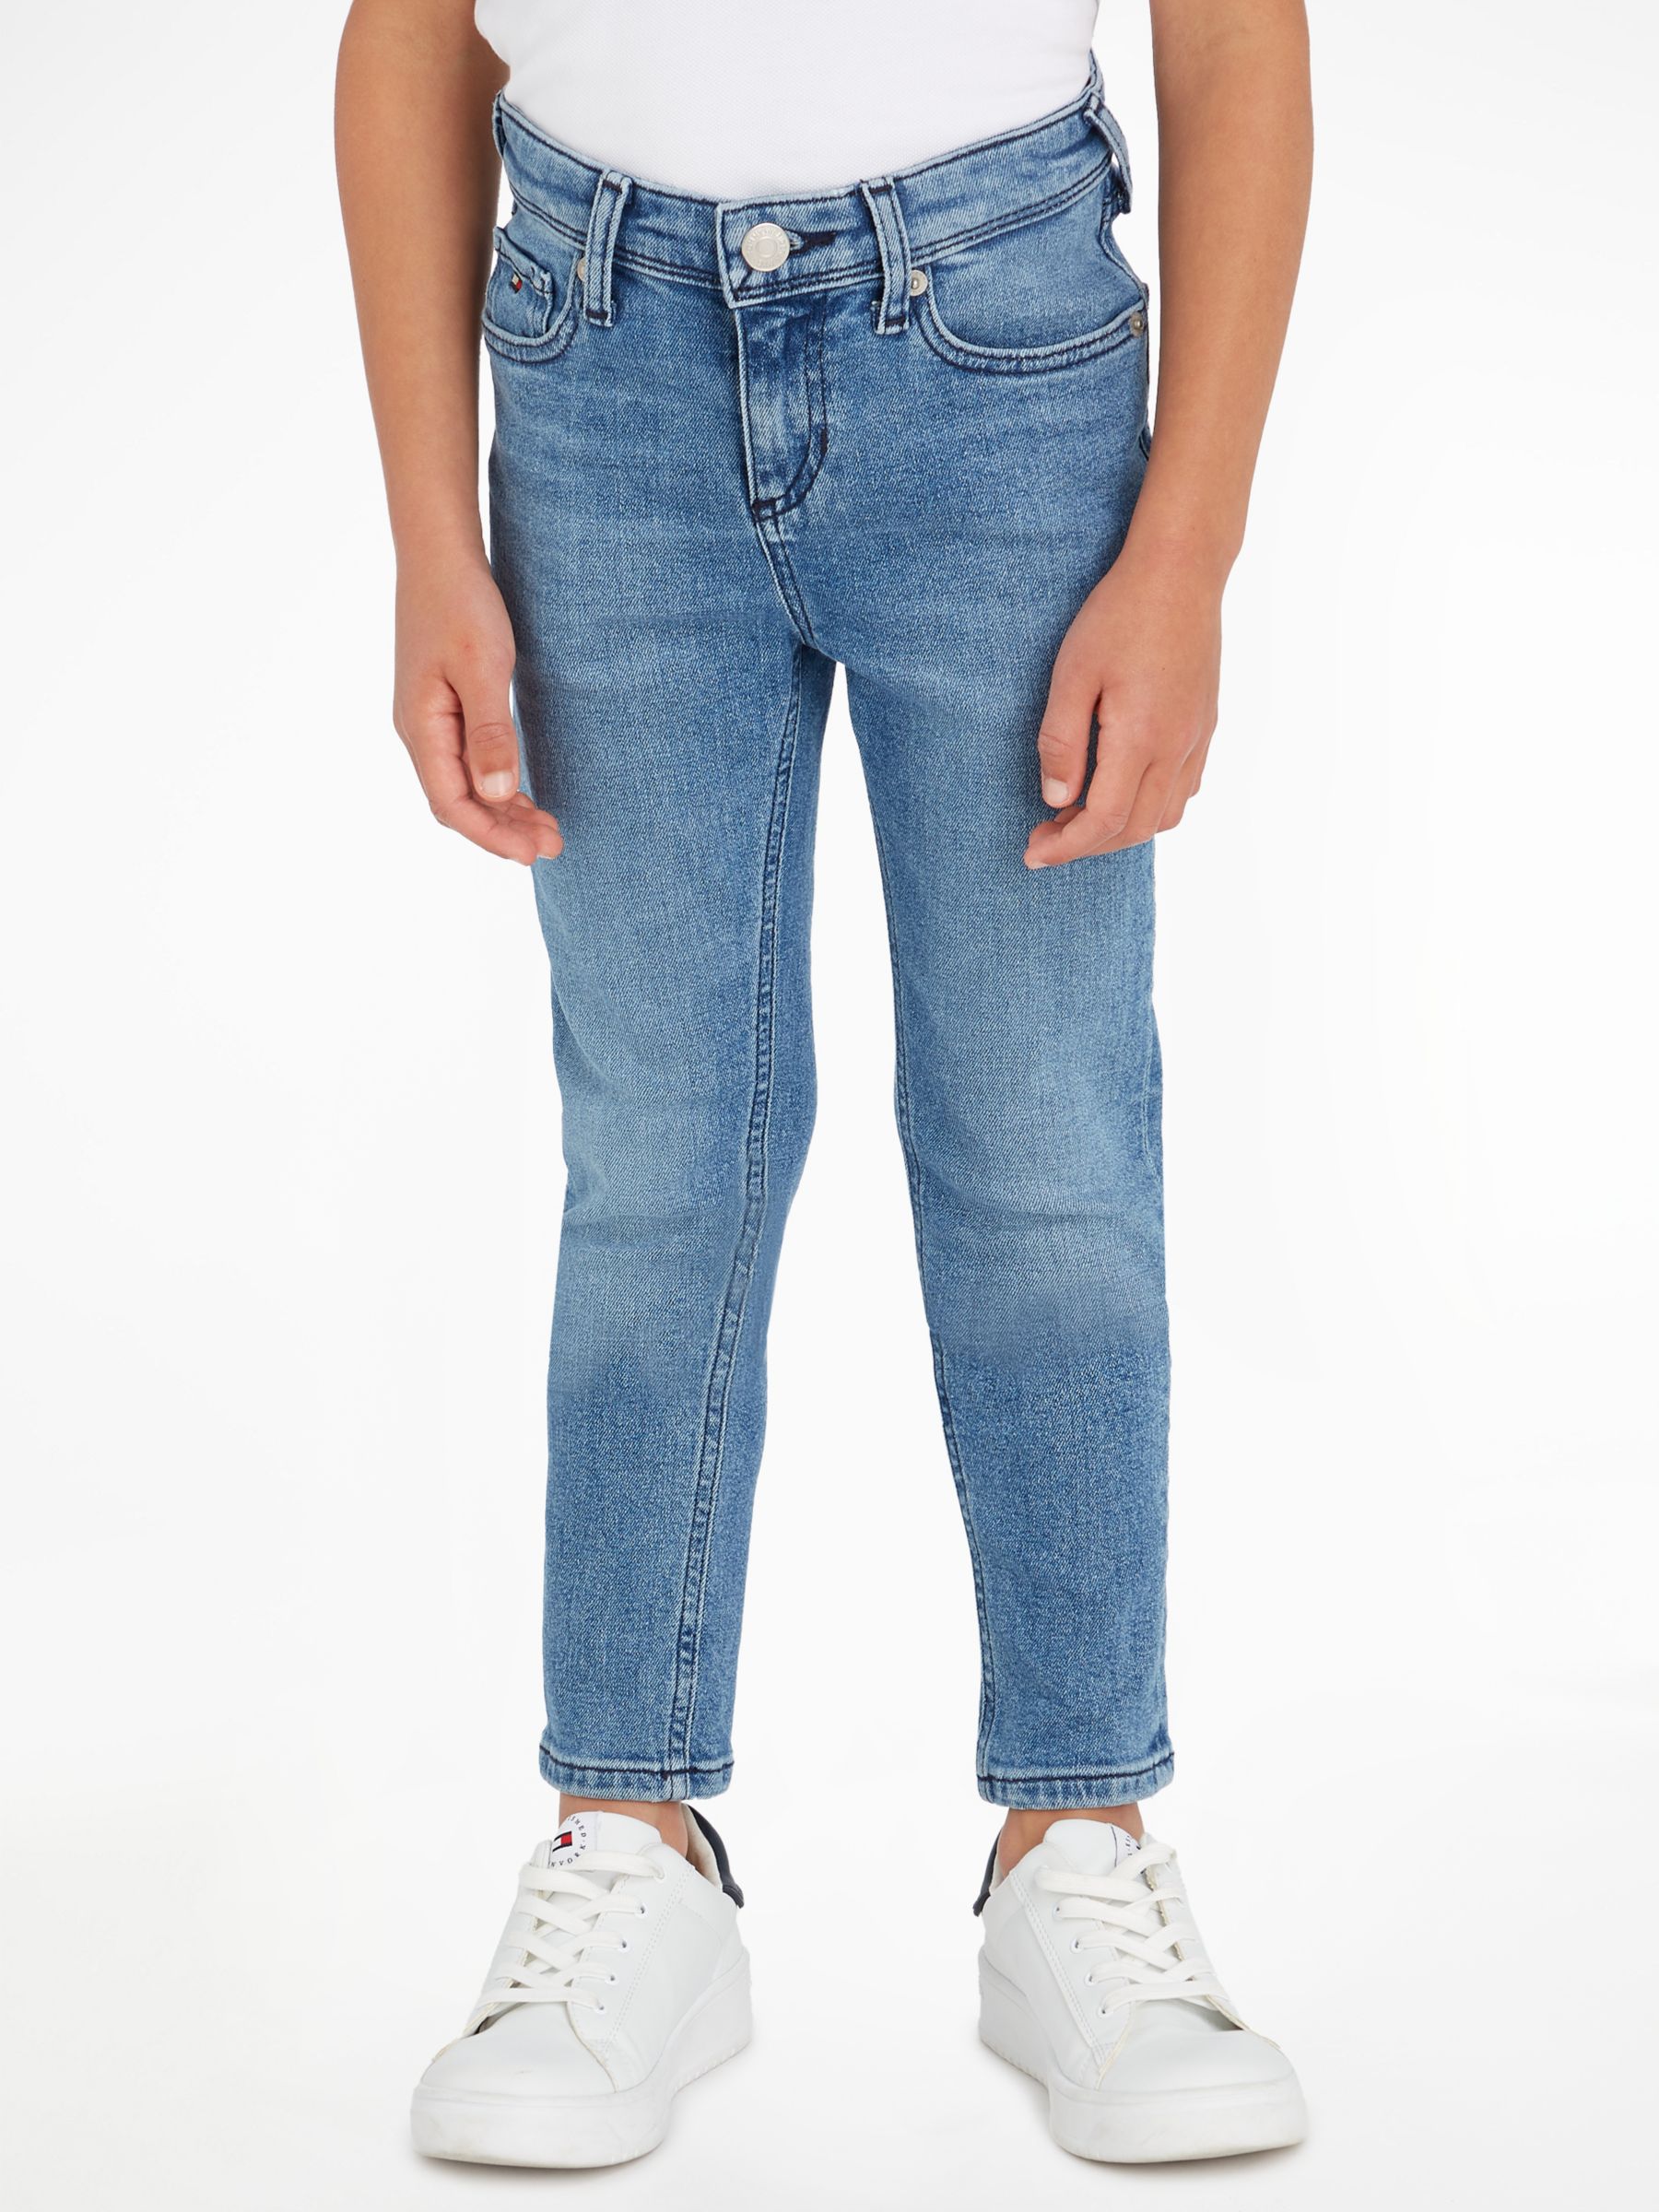 Tommy Hilfiger Kids' Scanton Jeans, Mid Blue